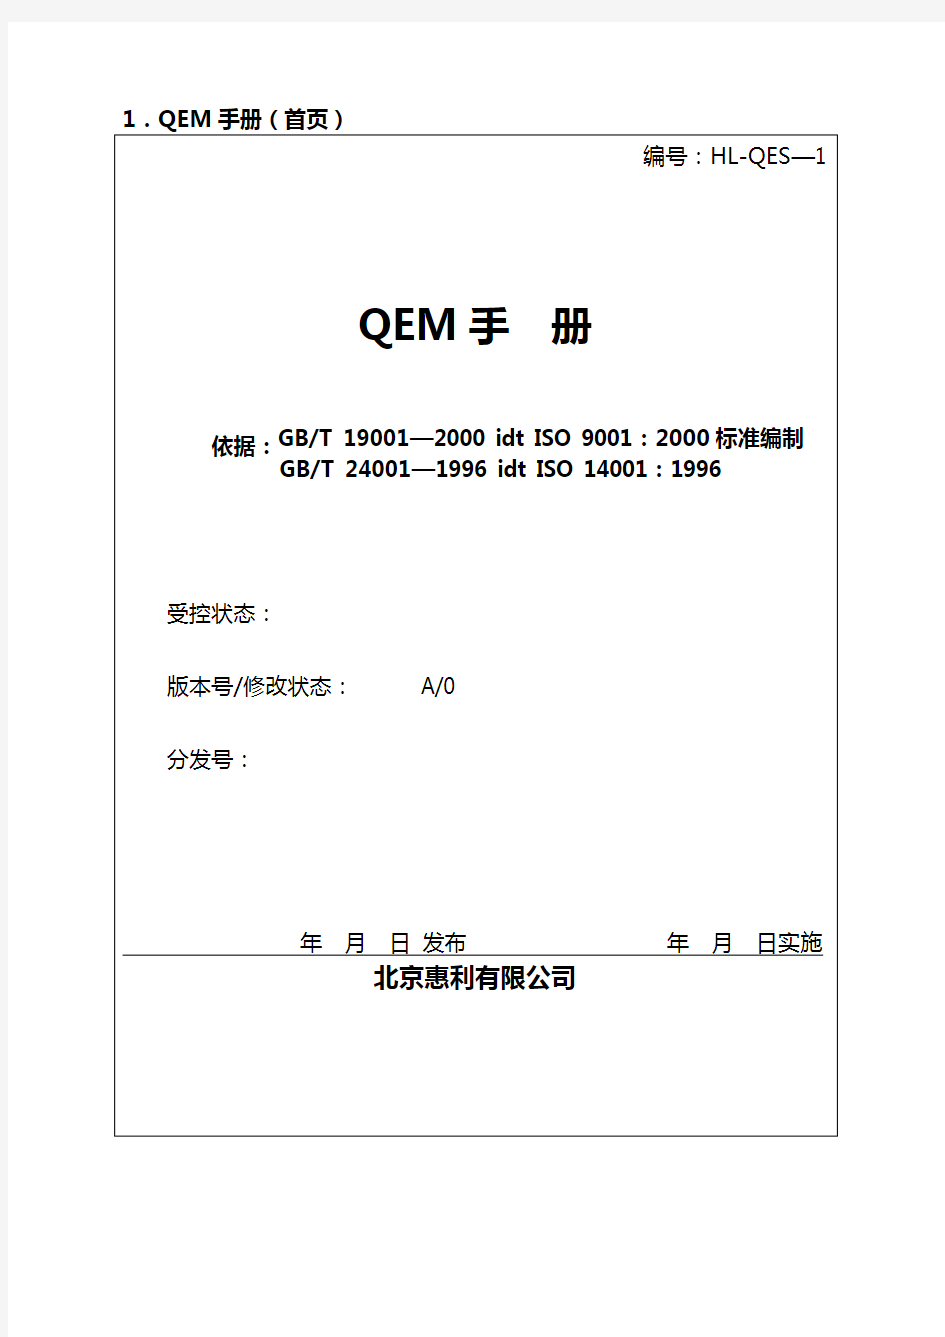 (企业管理手册)质量和环境管理手册